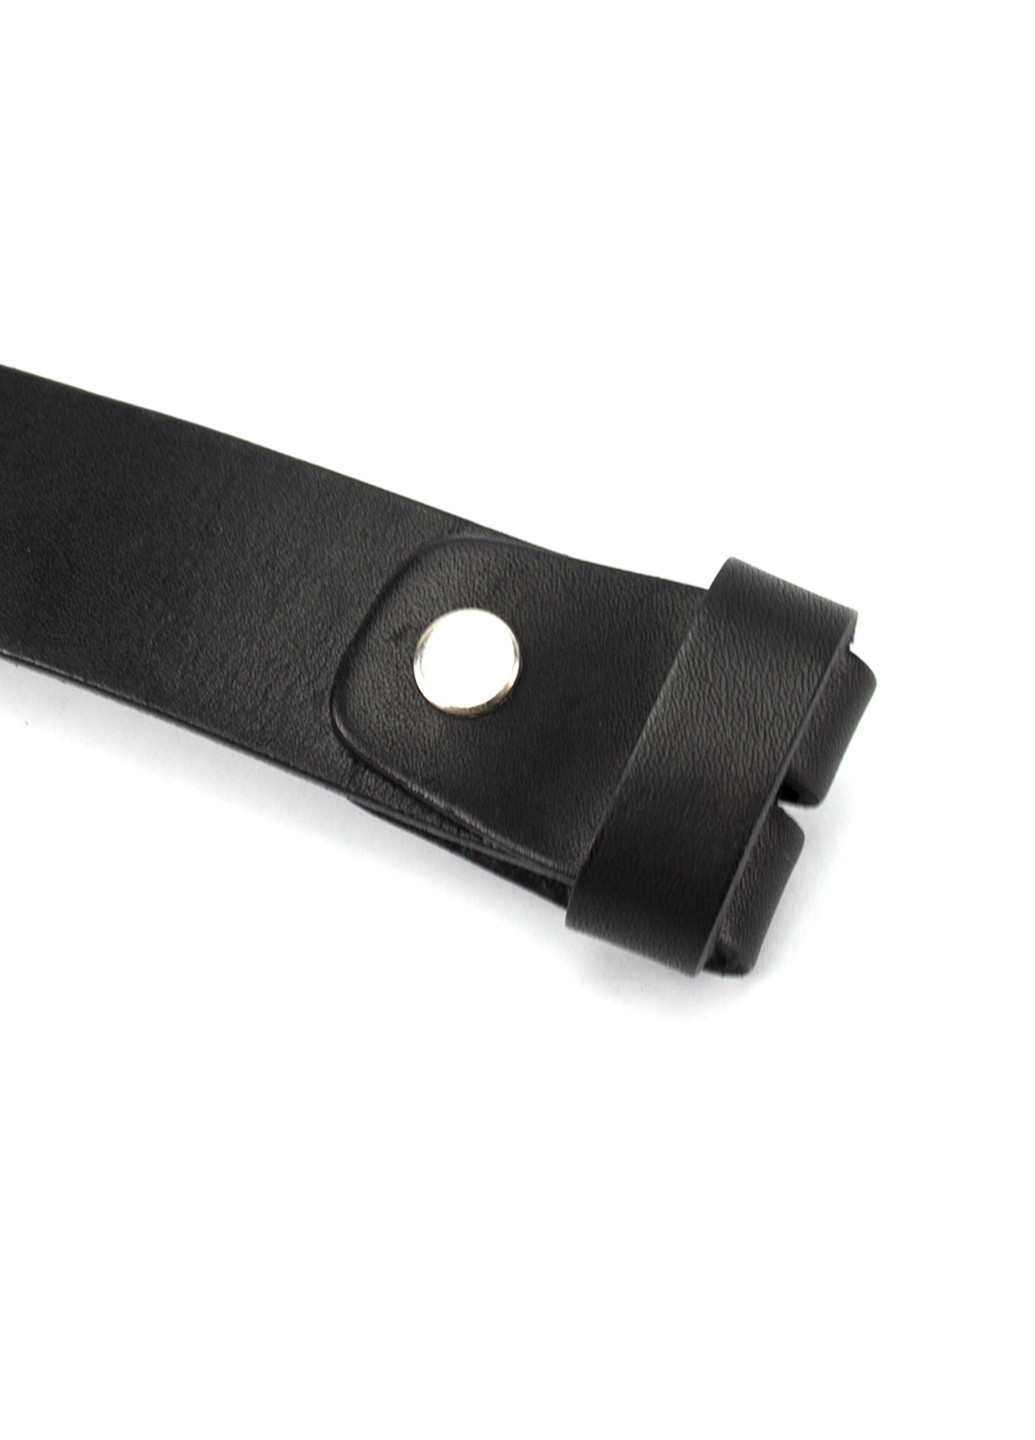 Ремень женский кожаный-узел без пряжки черный SF-258 black (125 см) SFIP (253411511)